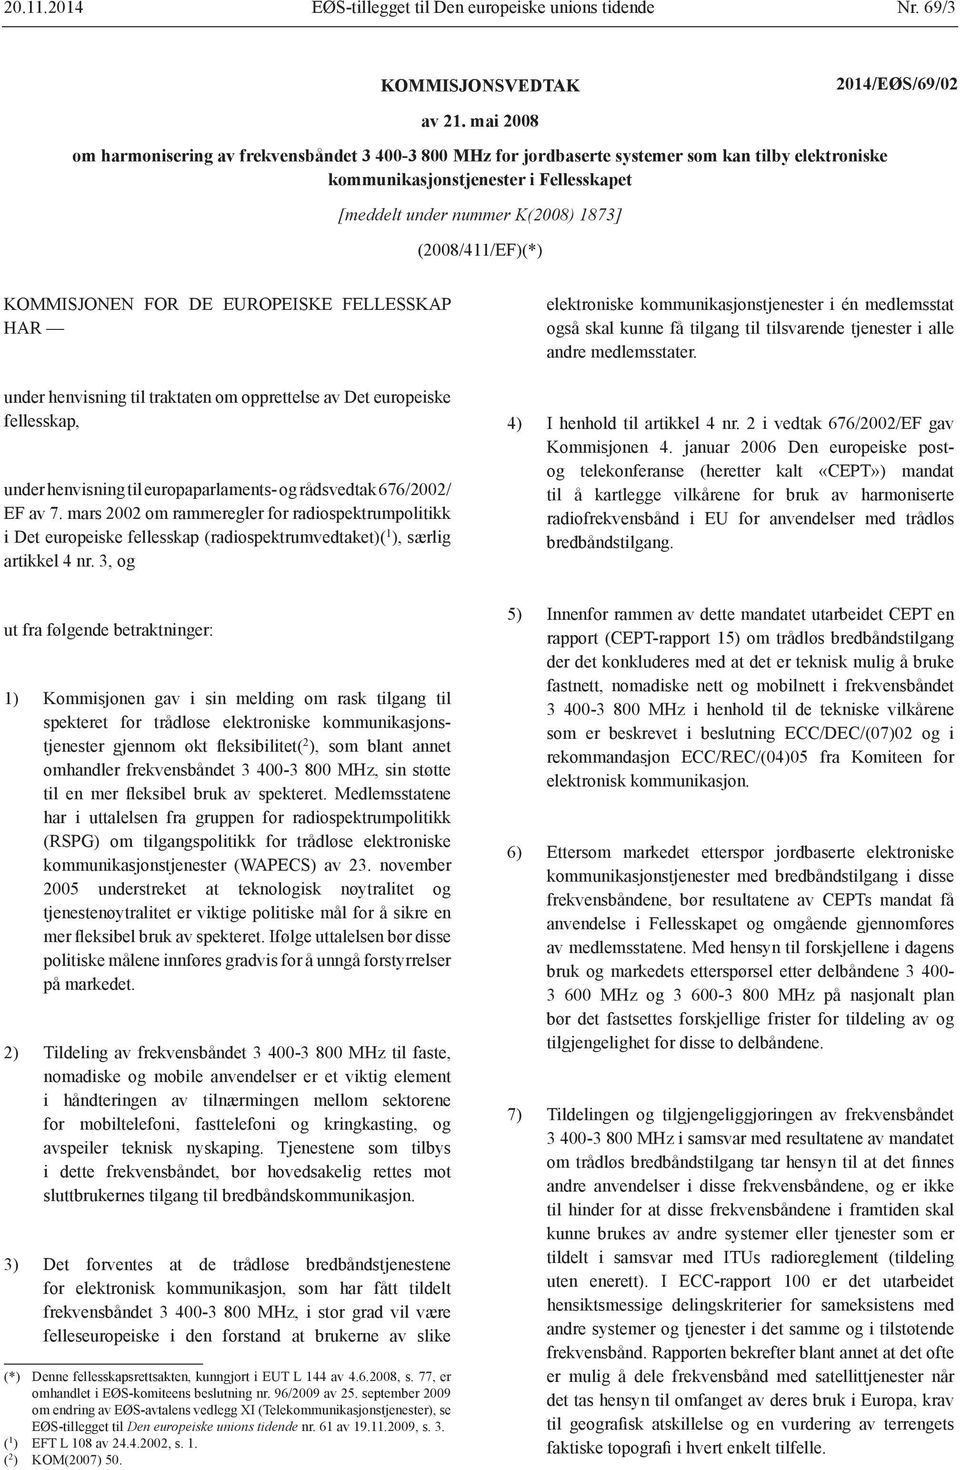 (2008/411/EF)(*) KOMMISJONEN FOR DE EUROPEISKE FELLESSKAP HAR under henvisning til traktaten om opprettelse av Det europeiske fellesskap, under henvisning til europaparlaments- og rådsvedtak